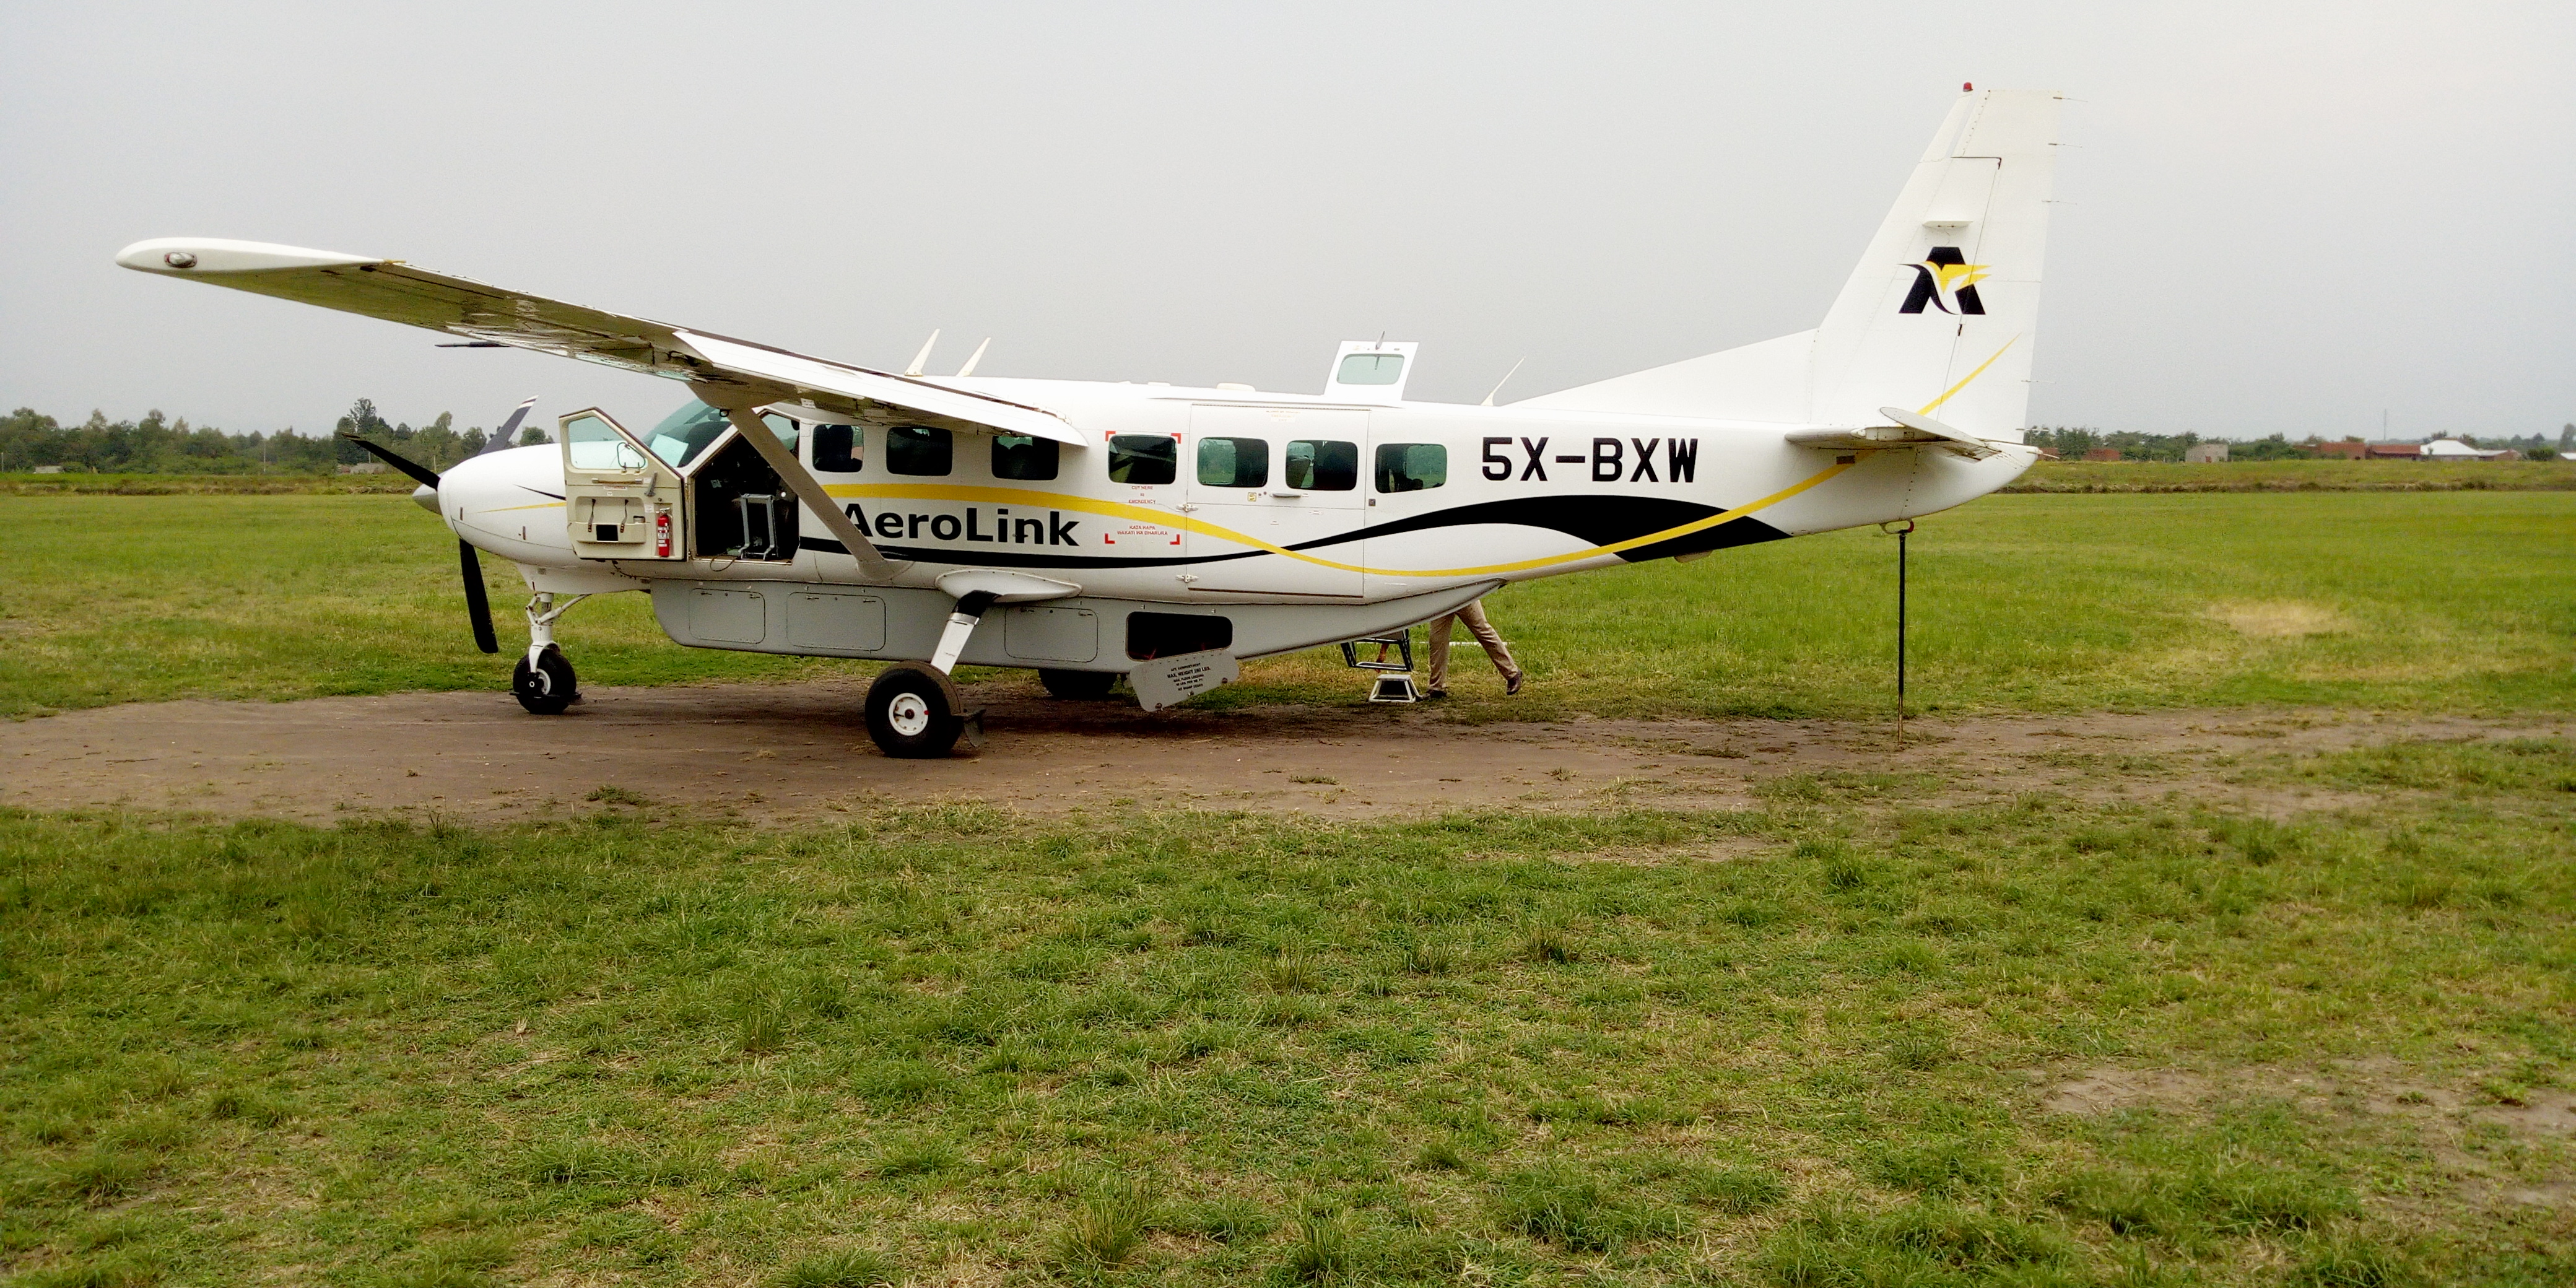 3 Days Flying Uganda Wildlife Safari to Kidepo Valley National Park